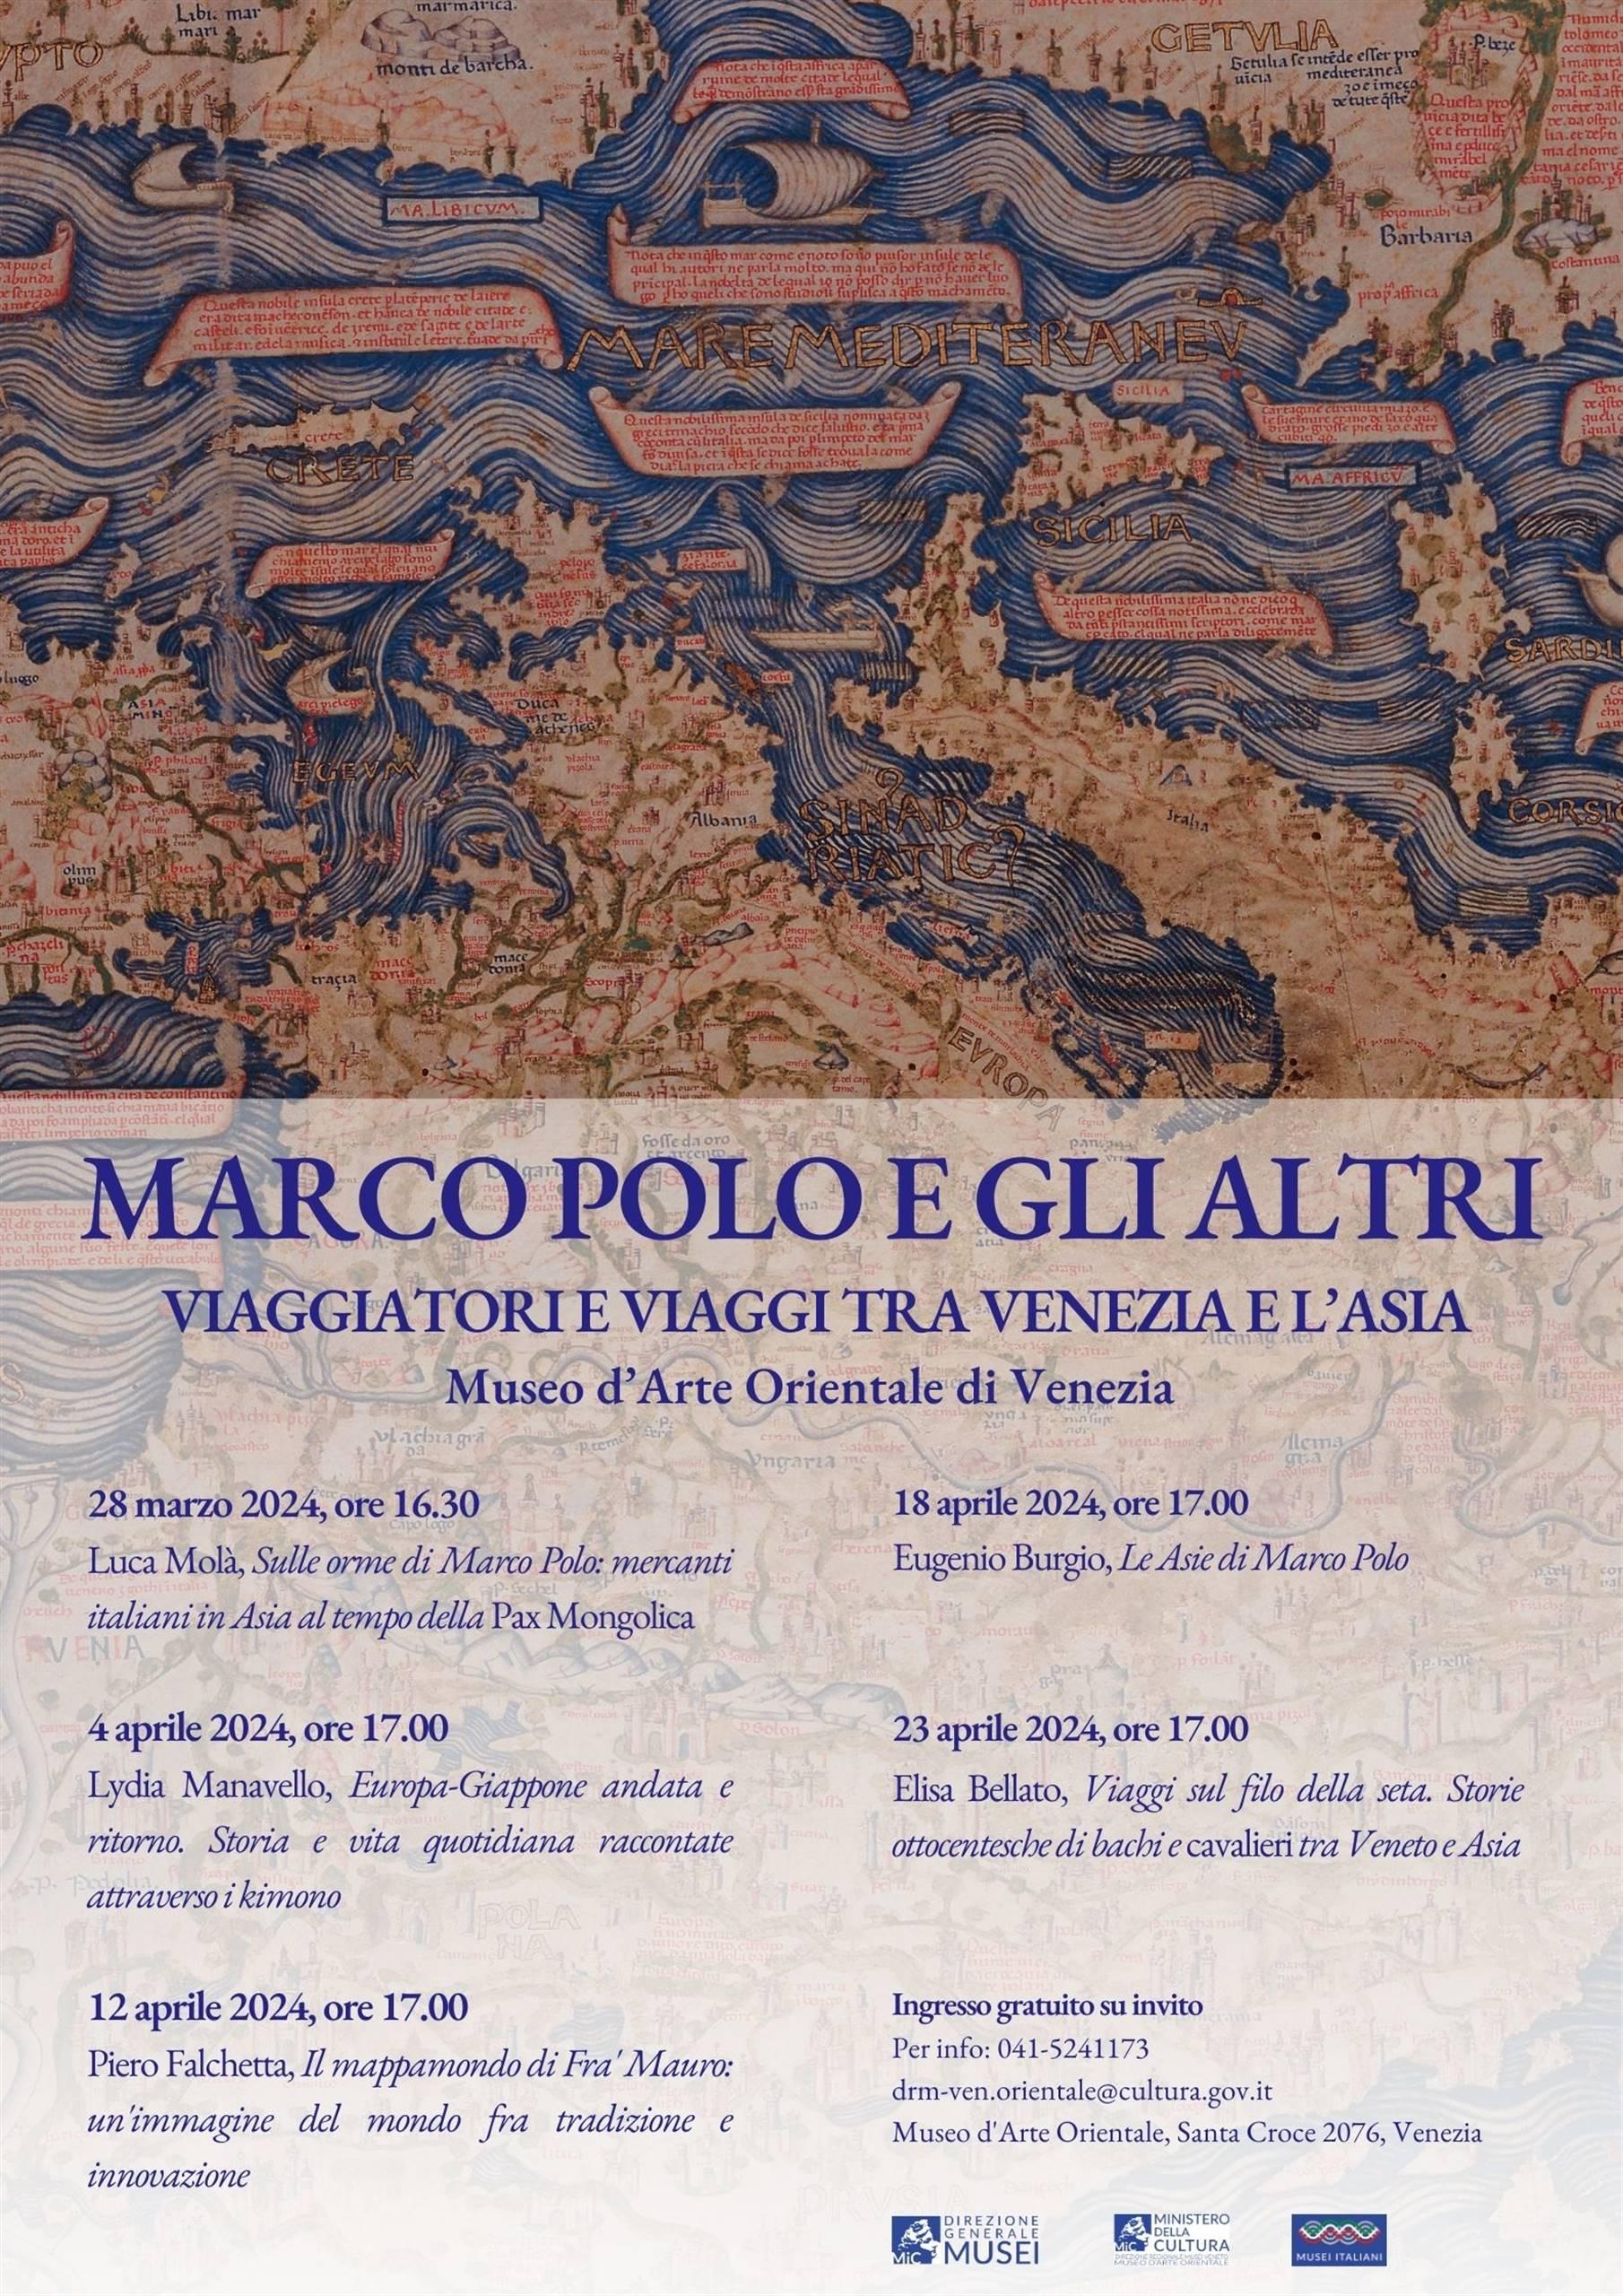 Marco Polo e gli altri. Viaggiatori e viaggi tra Venezia e l’Asia